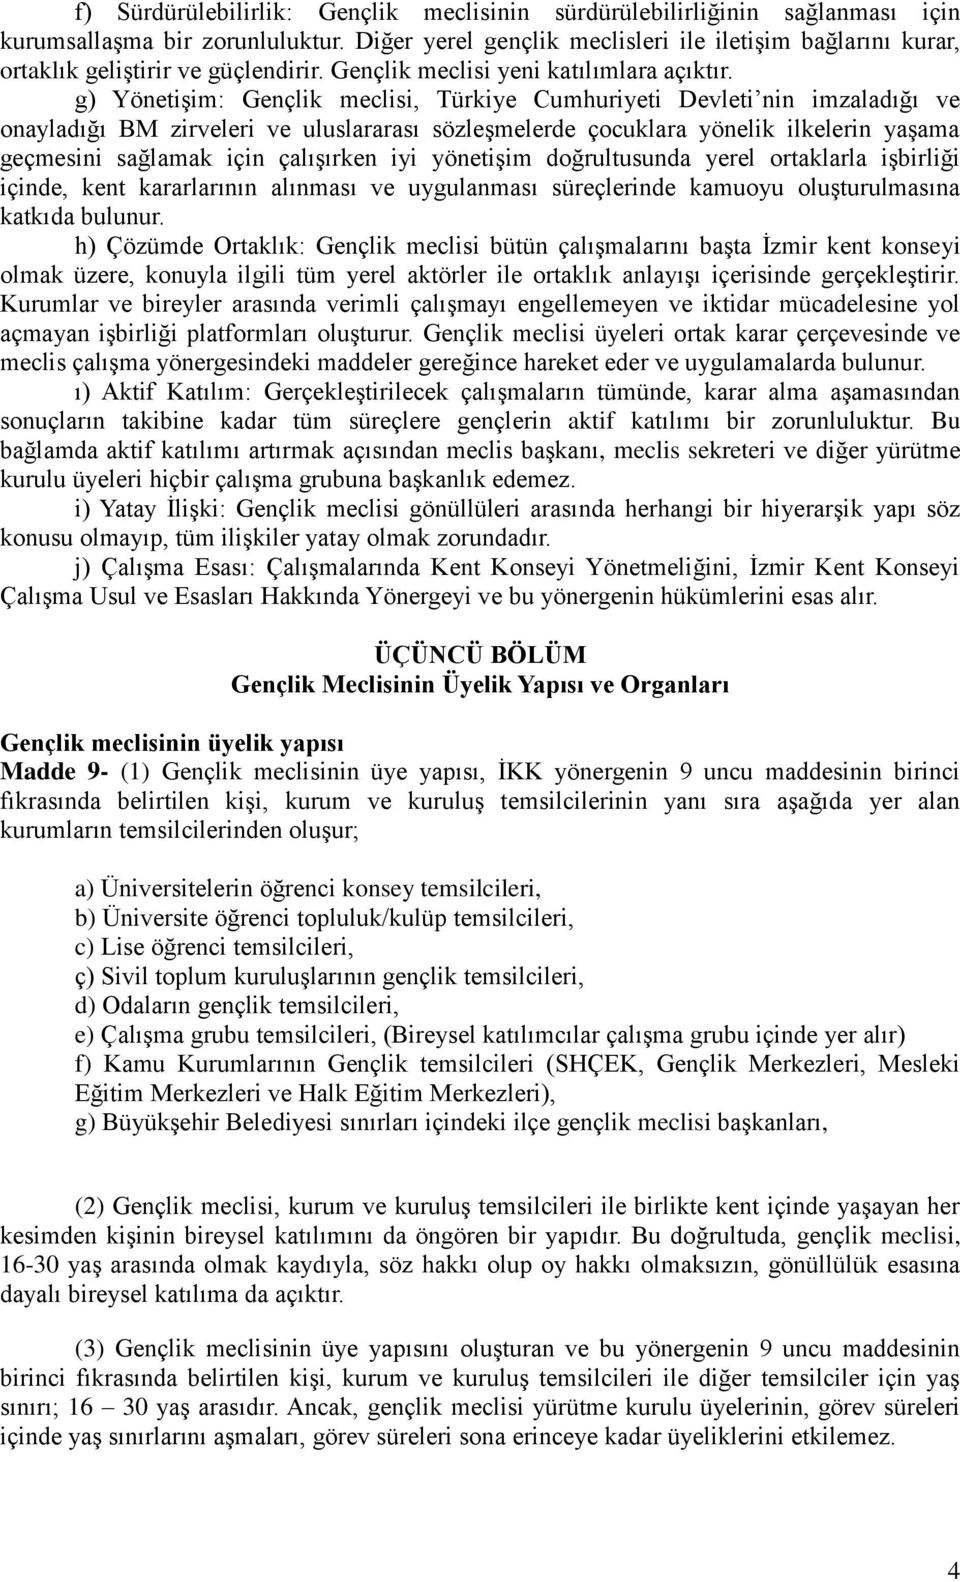 g) Yönetişim: Gençlik meclisi, Türkiye Cumhuriyeti Devleti nin imzaladığı ve onayladığı BM zirveleri ve uluslararası sözleşmelerde çocuklara yönelik ilkelerin yaşama geçmesini sağlamak için